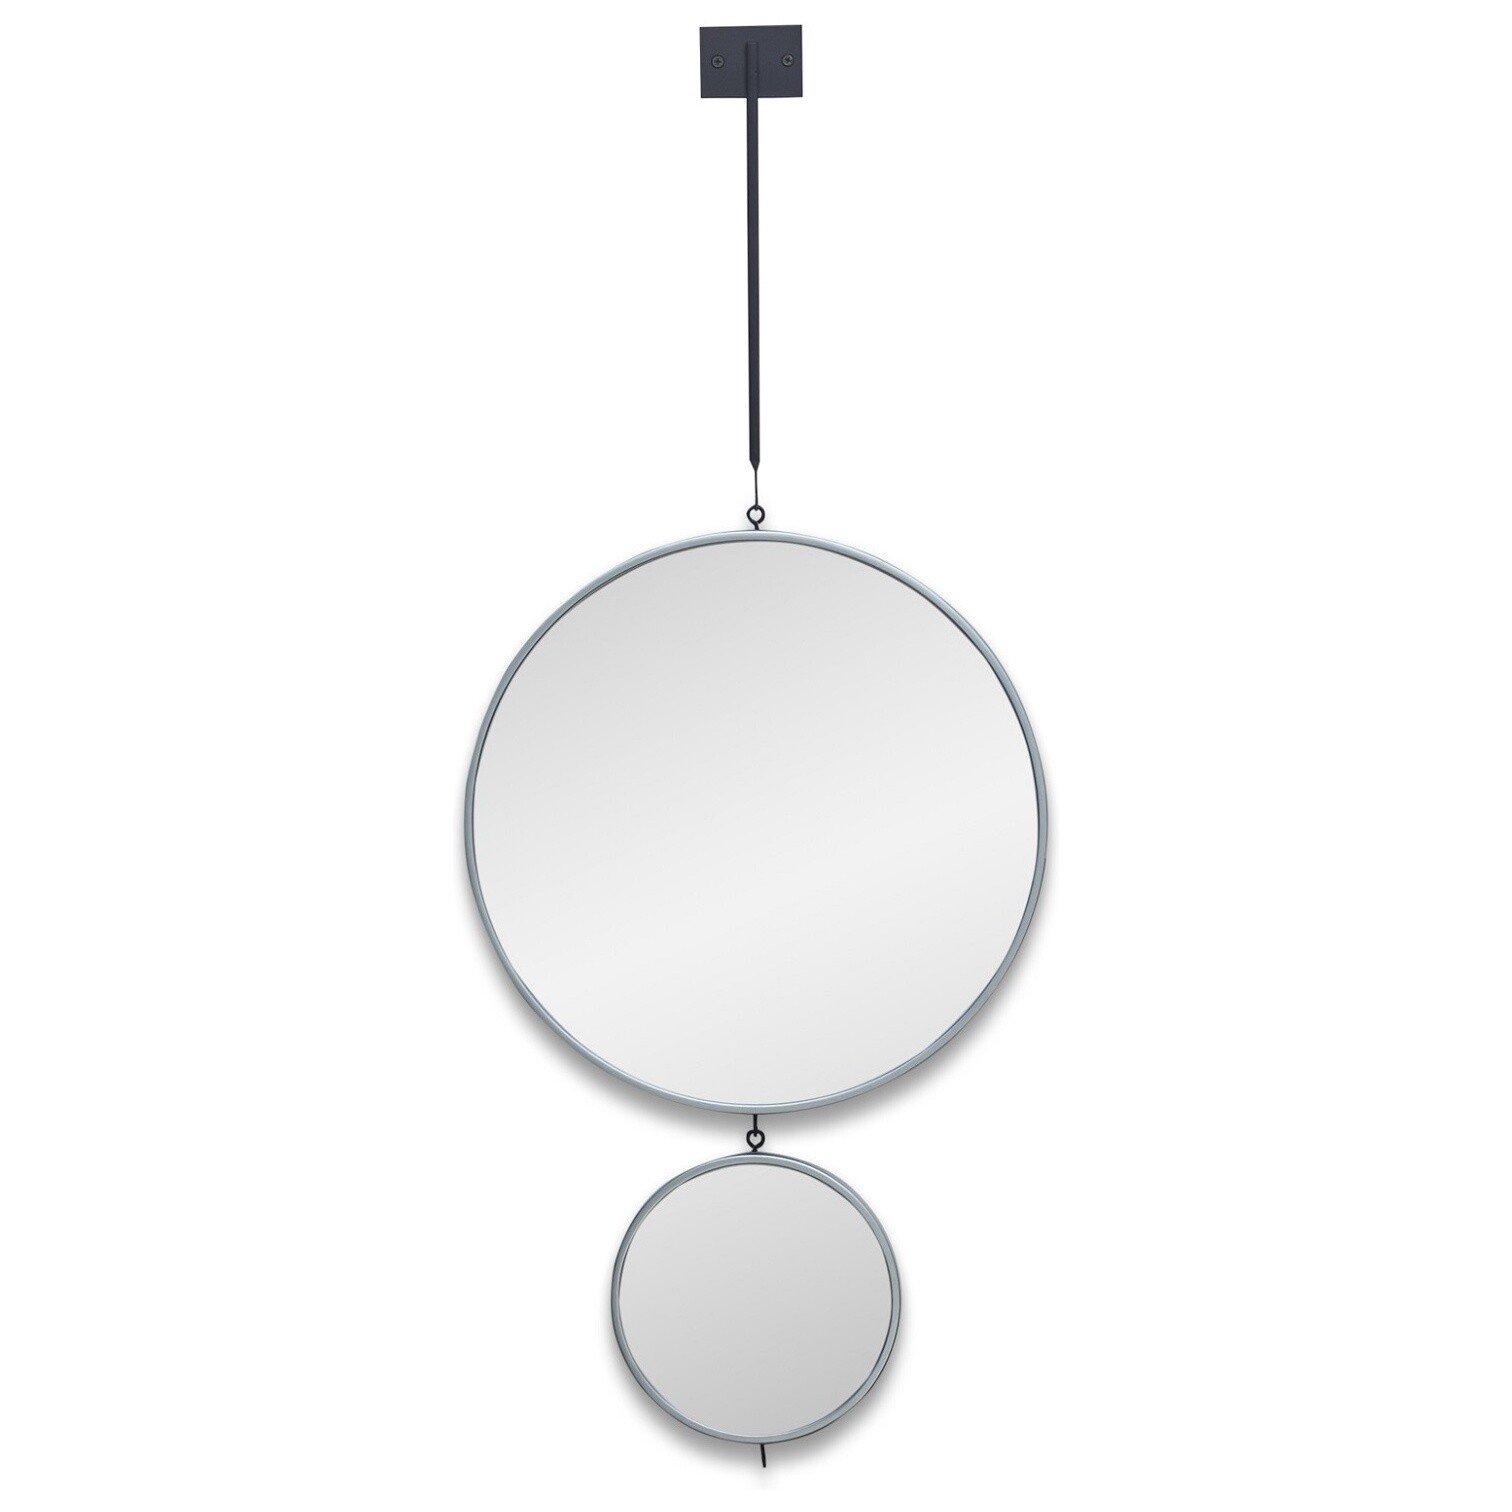 Зеркала настенные круглые на подвесе тандем в тонкой раме серебро Tandem L Silver